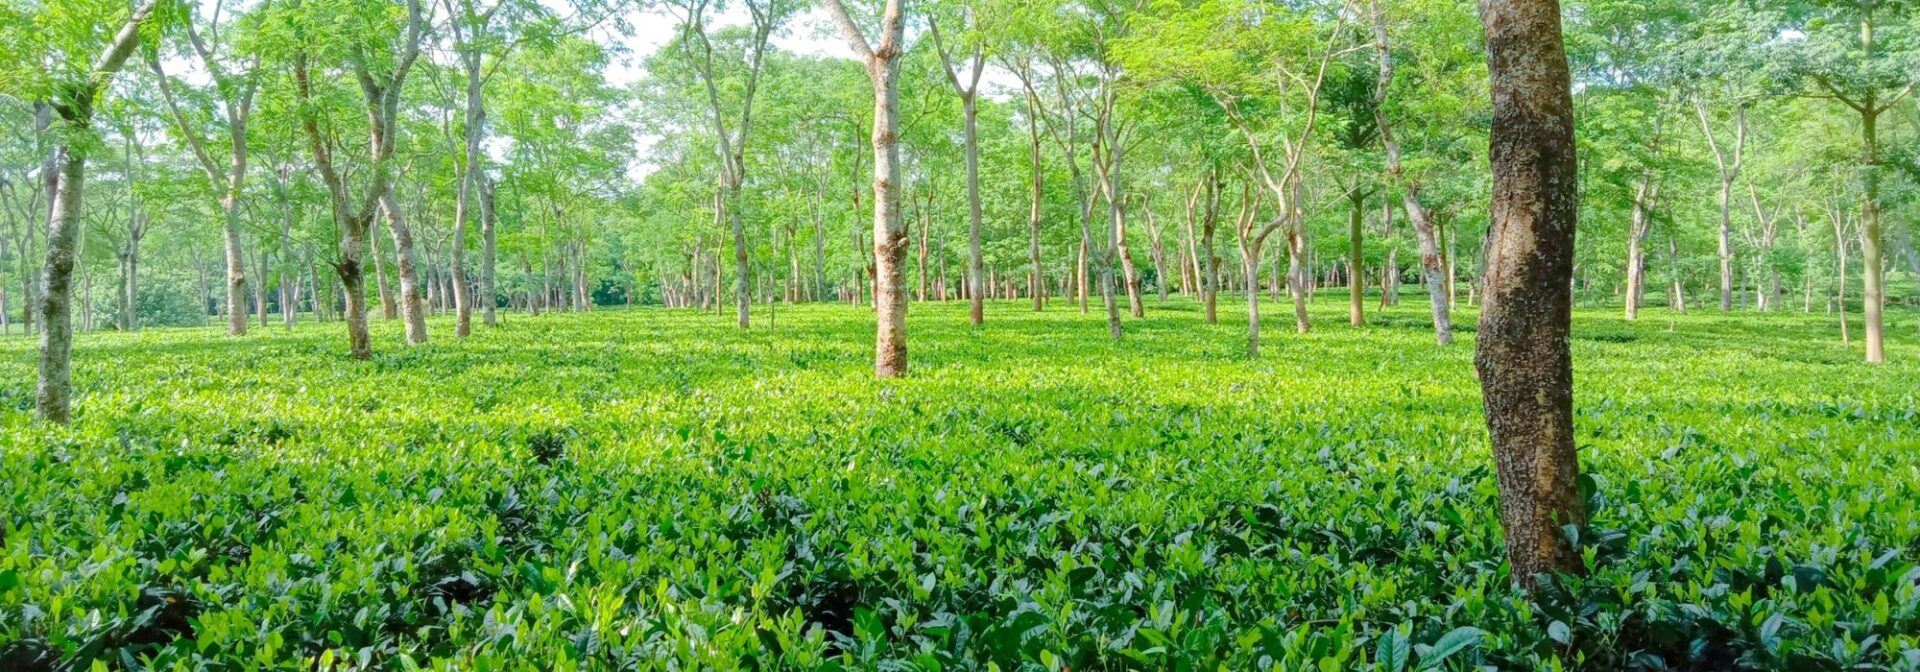 Assam Teas from Hopscotch